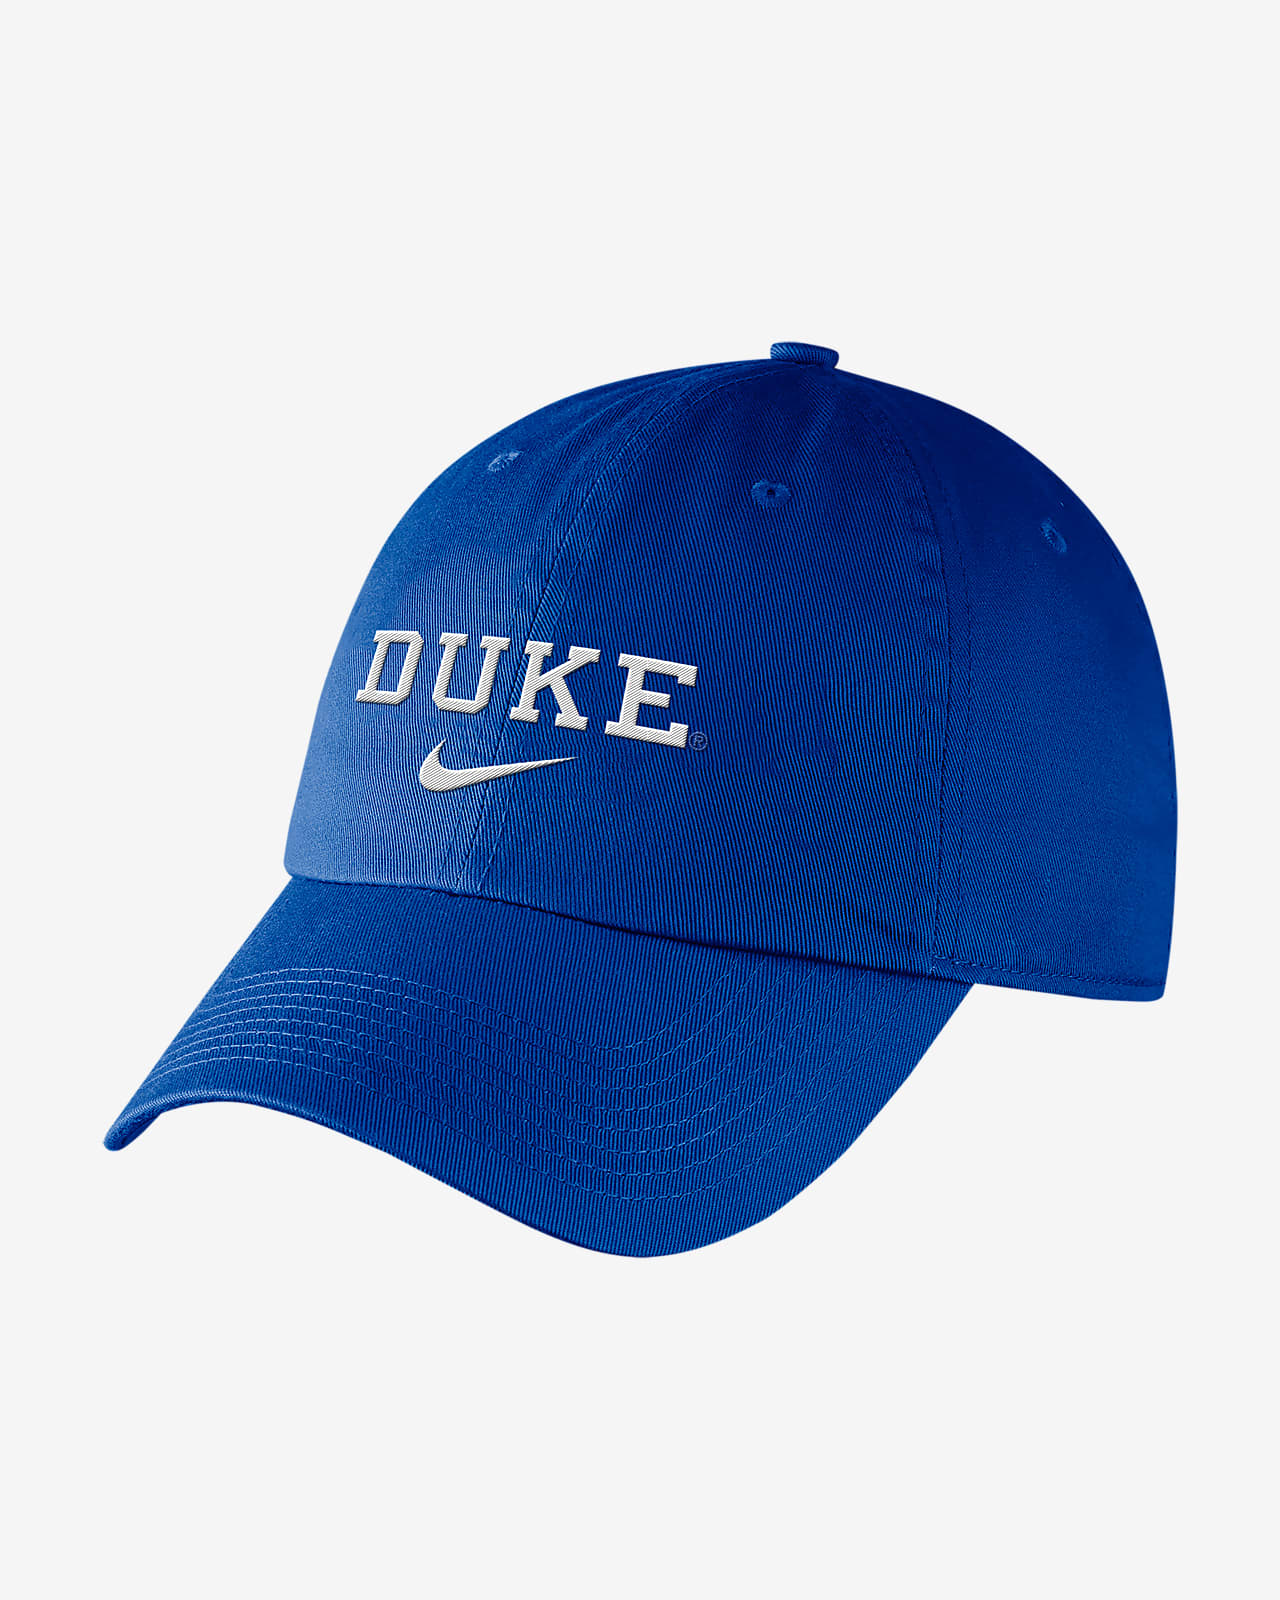 Nike College (Duke) Hat